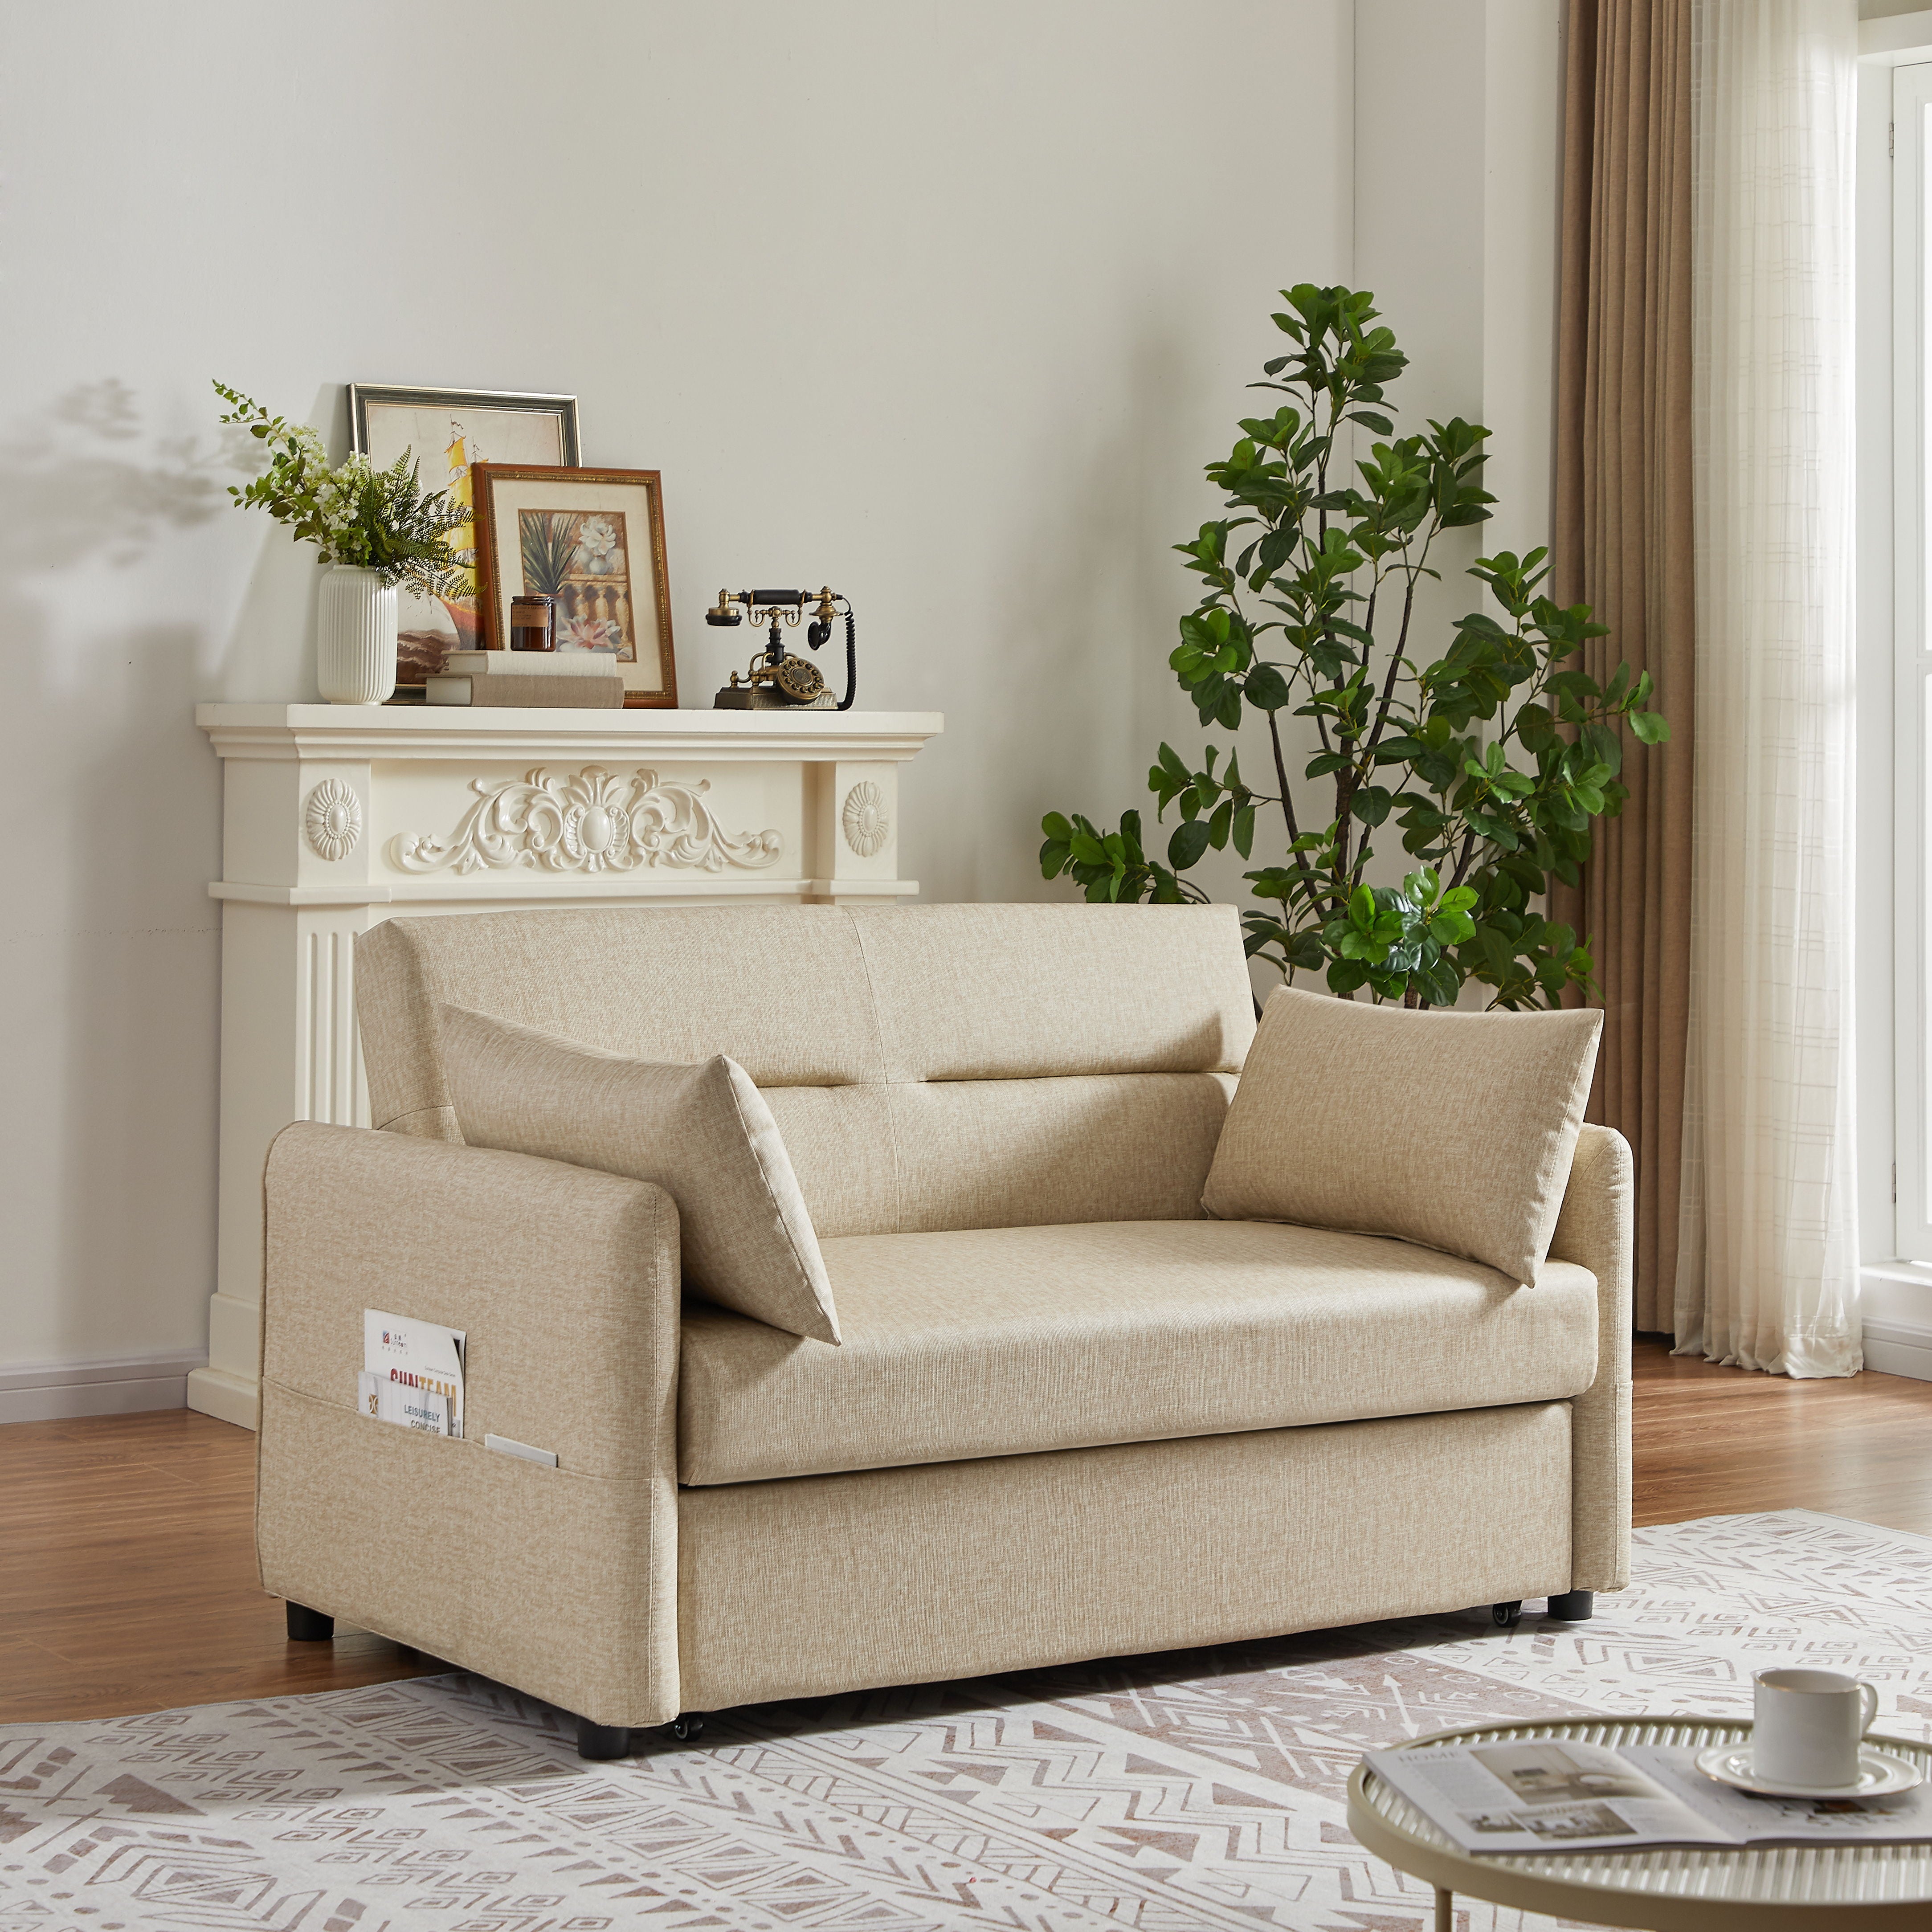 2033 Khaki Fabric Leather (PU) Leisure Two-Seat Sofa